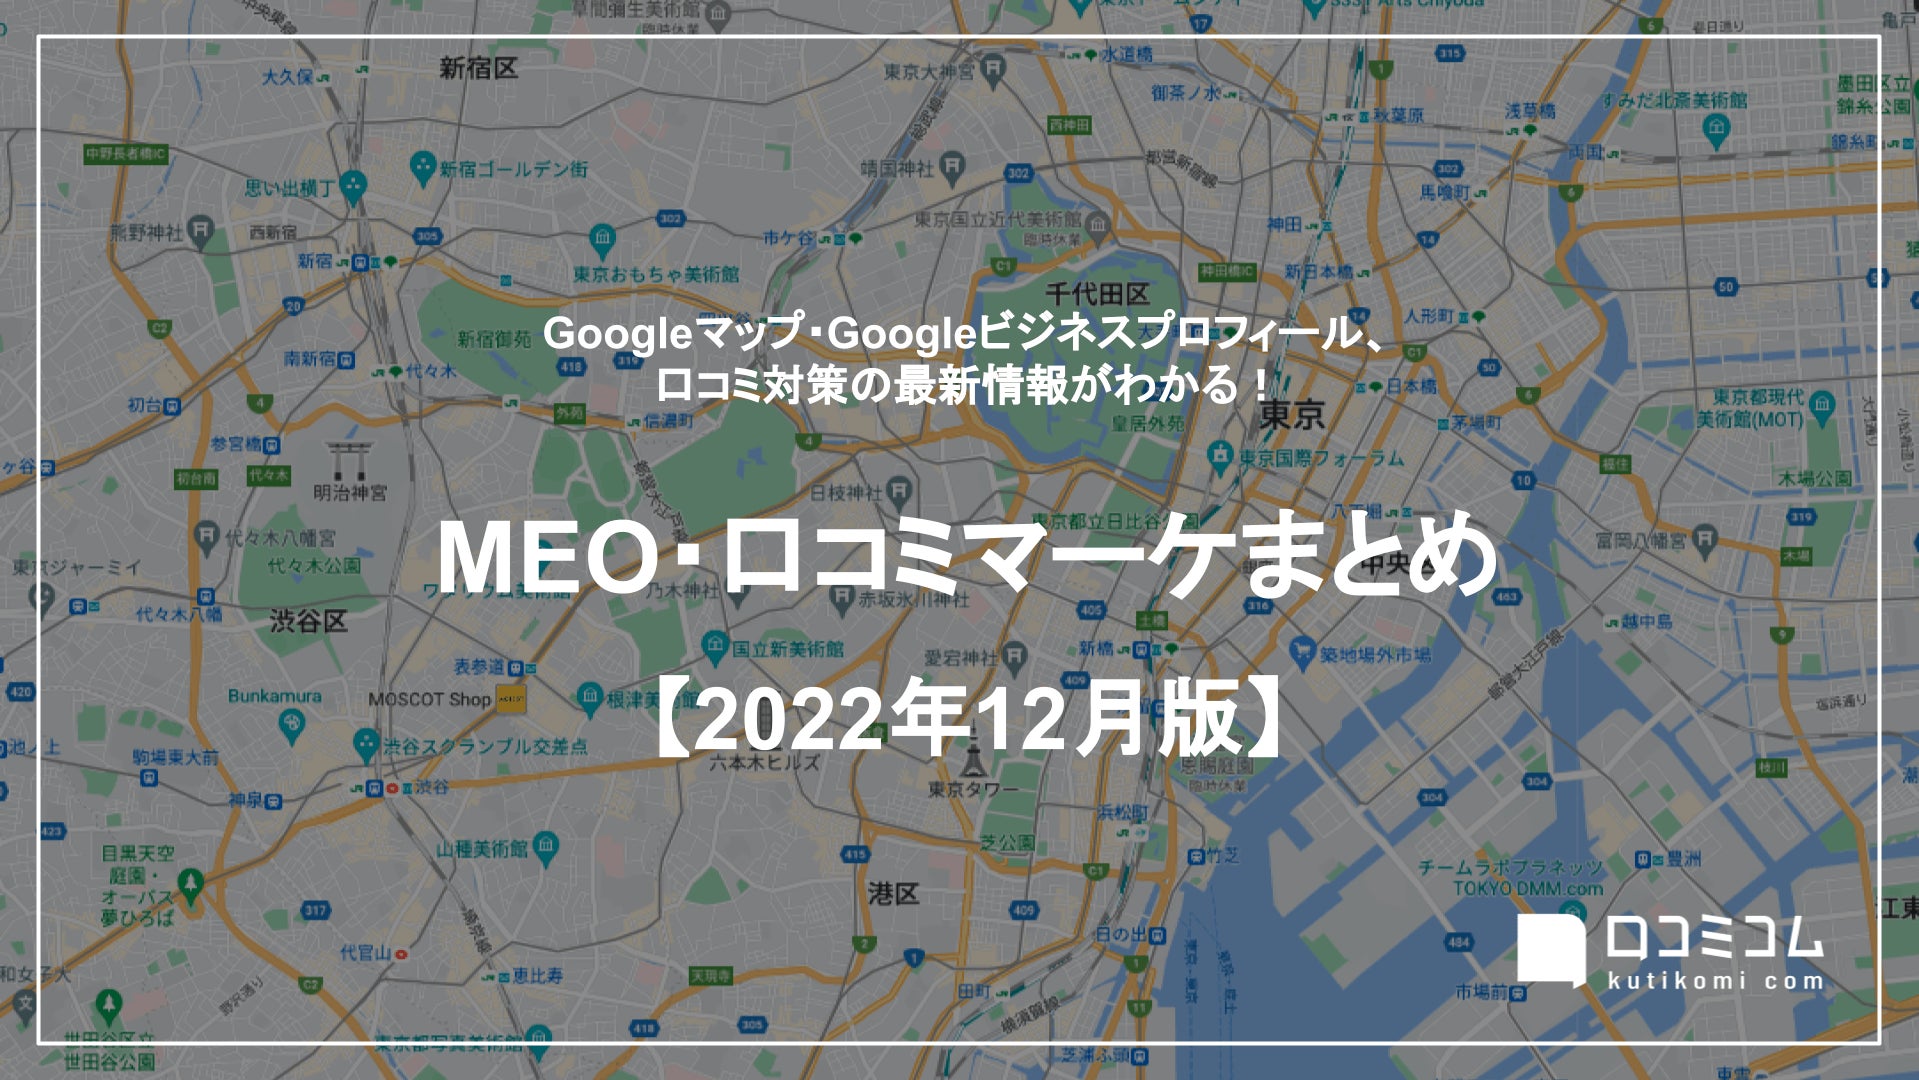 最新の「Googleマップ」更新情報レポート【2022年12月版】を口コミコムが公開のサブ画像1